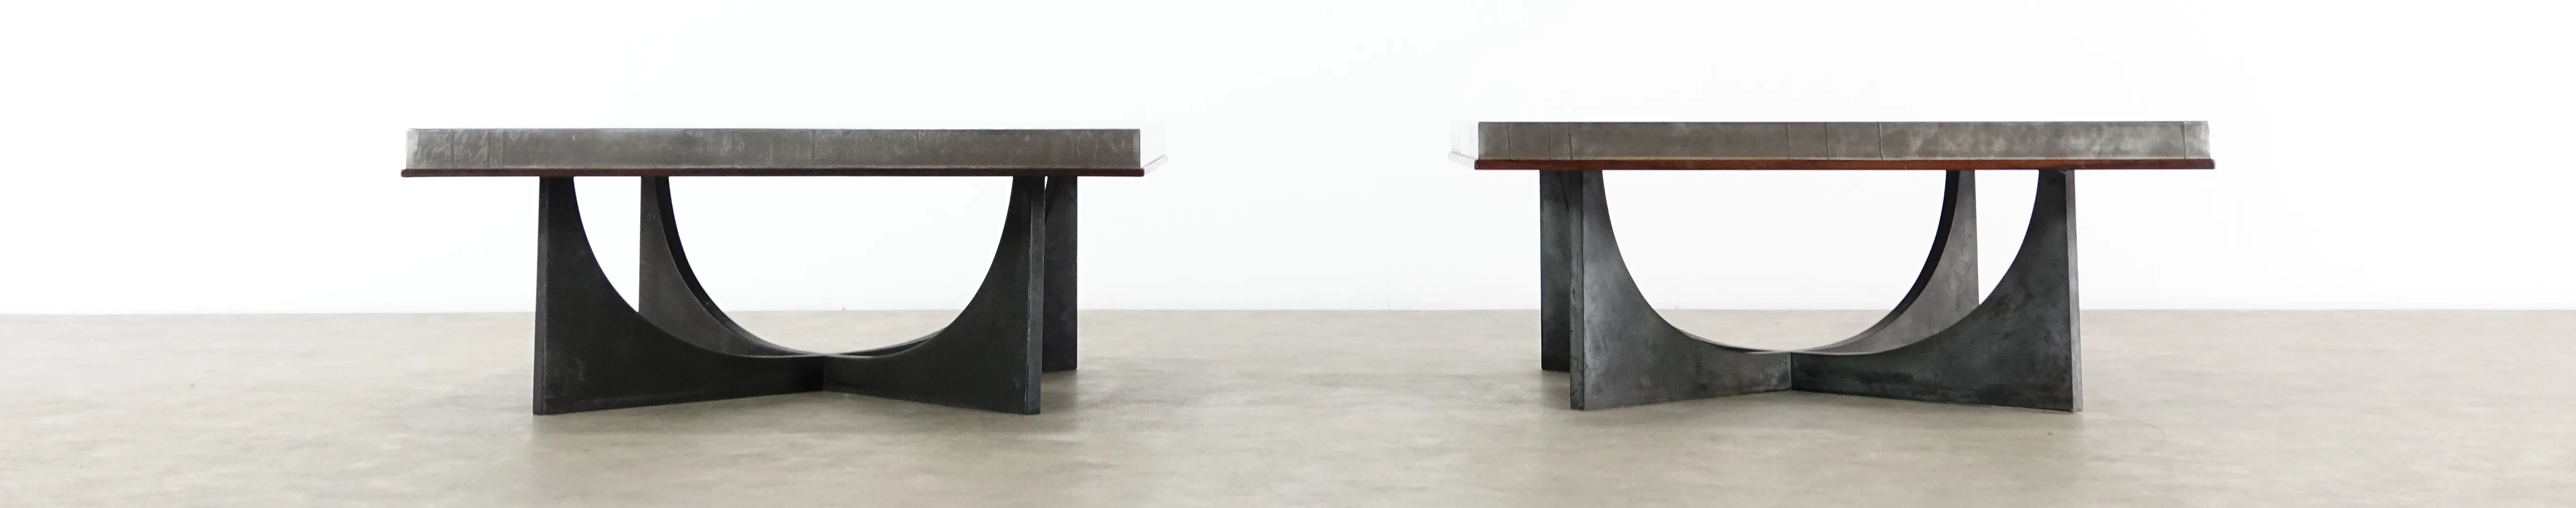 Stilvolles Foto von zwei interessanten Designer Tischen als Beispiel für hochwertige Möbel die wir ankaufen.